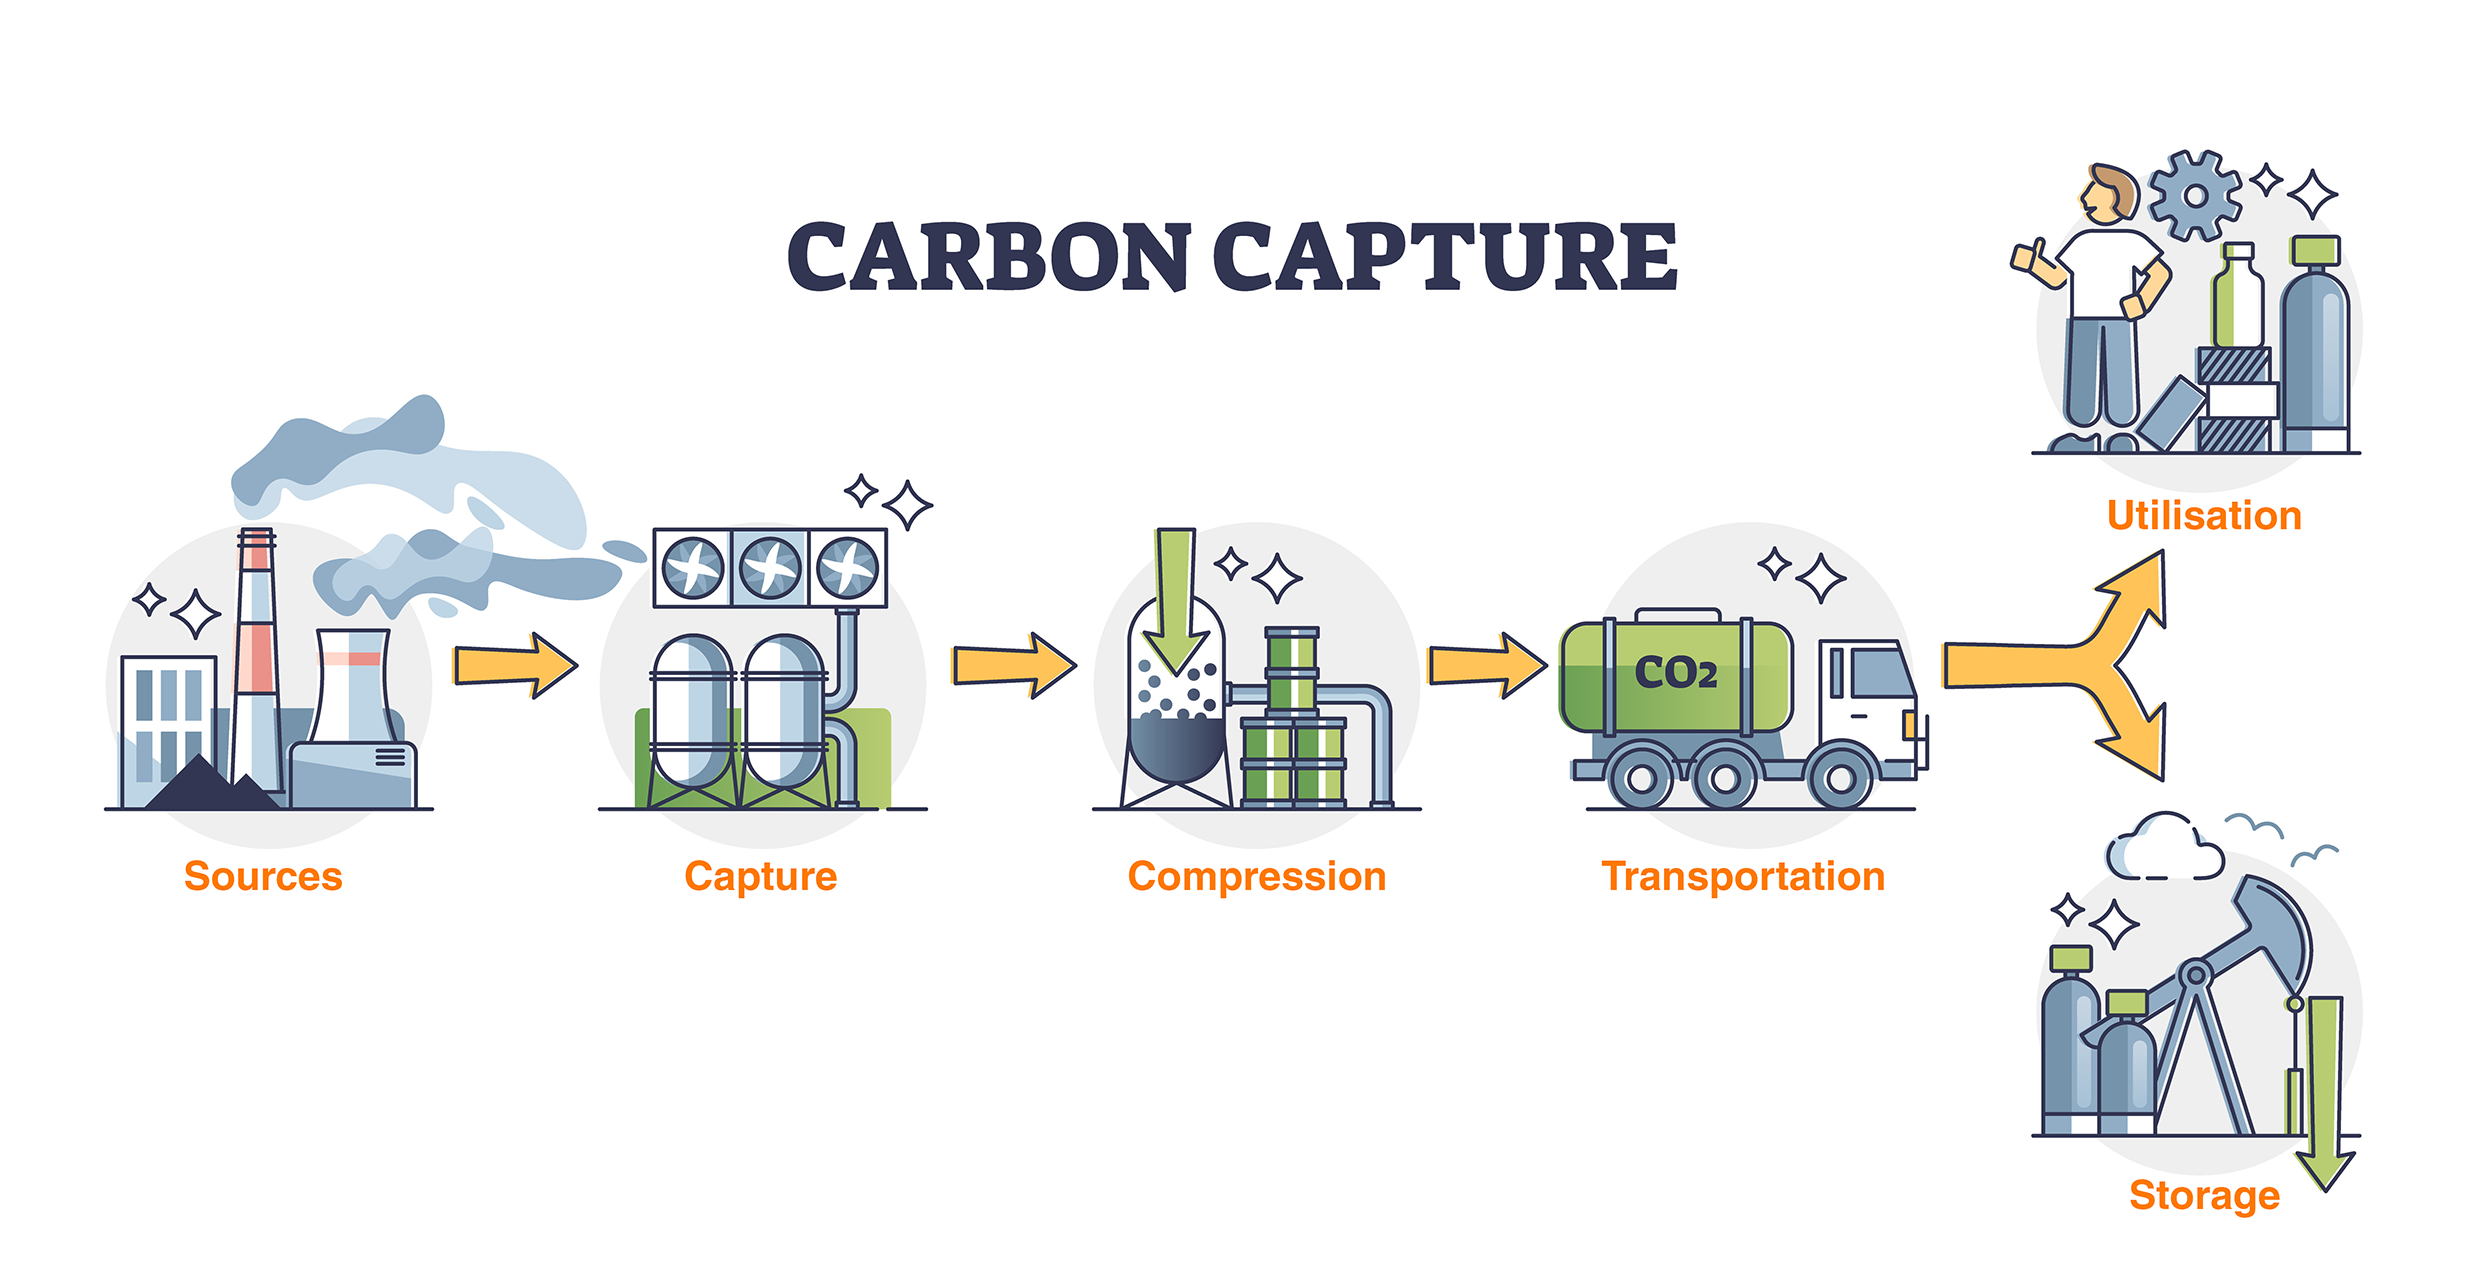 Carbon capture process